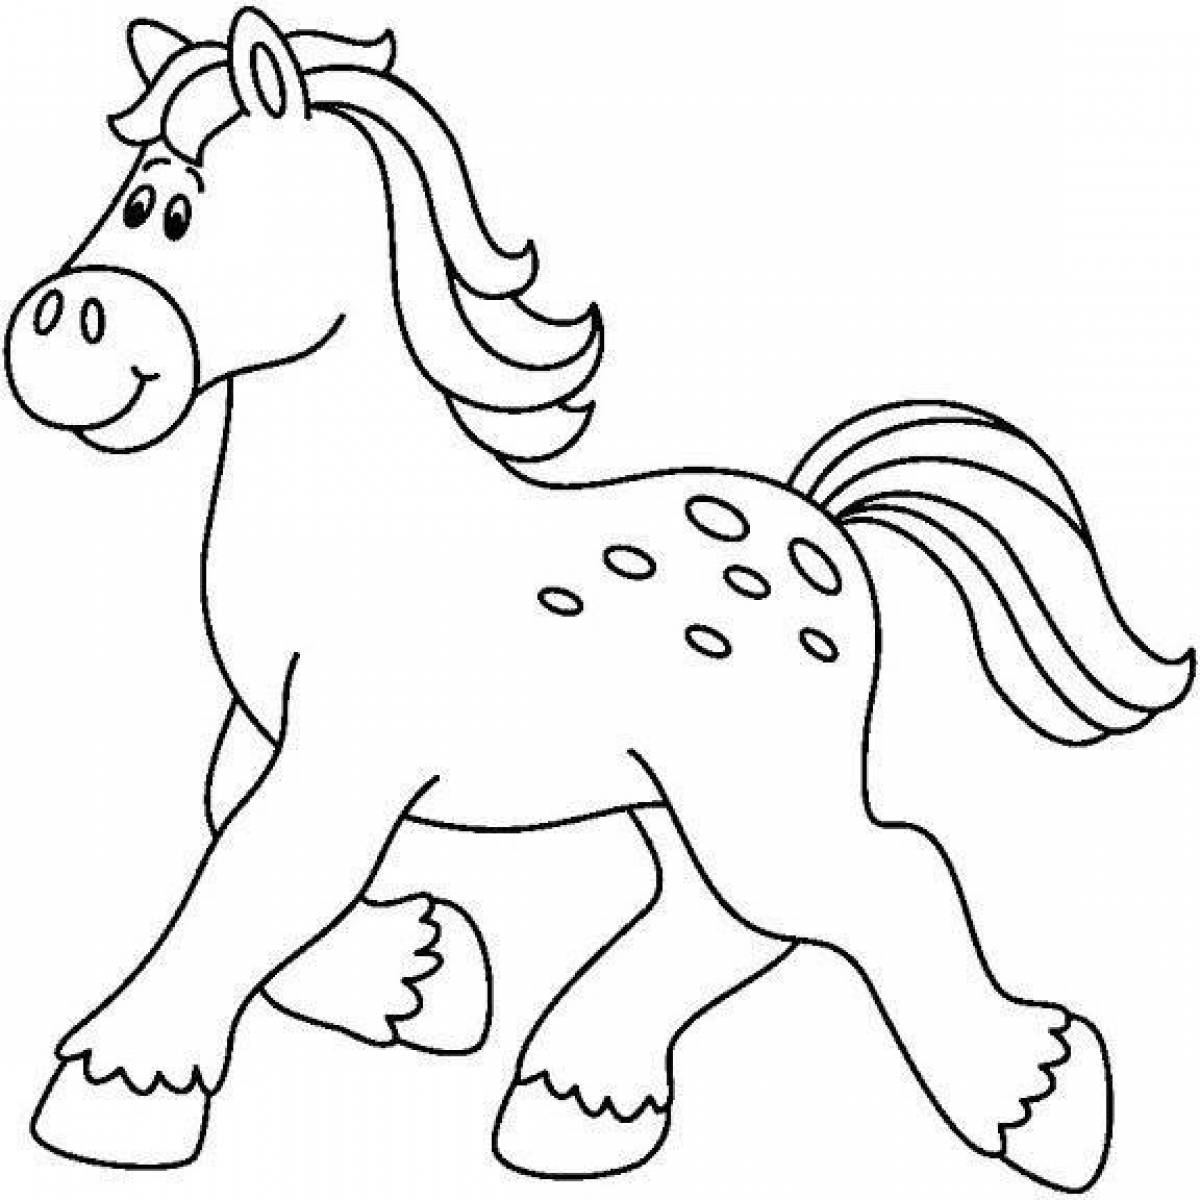 Раскрашиваем лошадку. Трафарет лошадки для детей. Лошадка раскраска для детей. Лошадь раскраска для детей. Лошадь трафарет для детей.